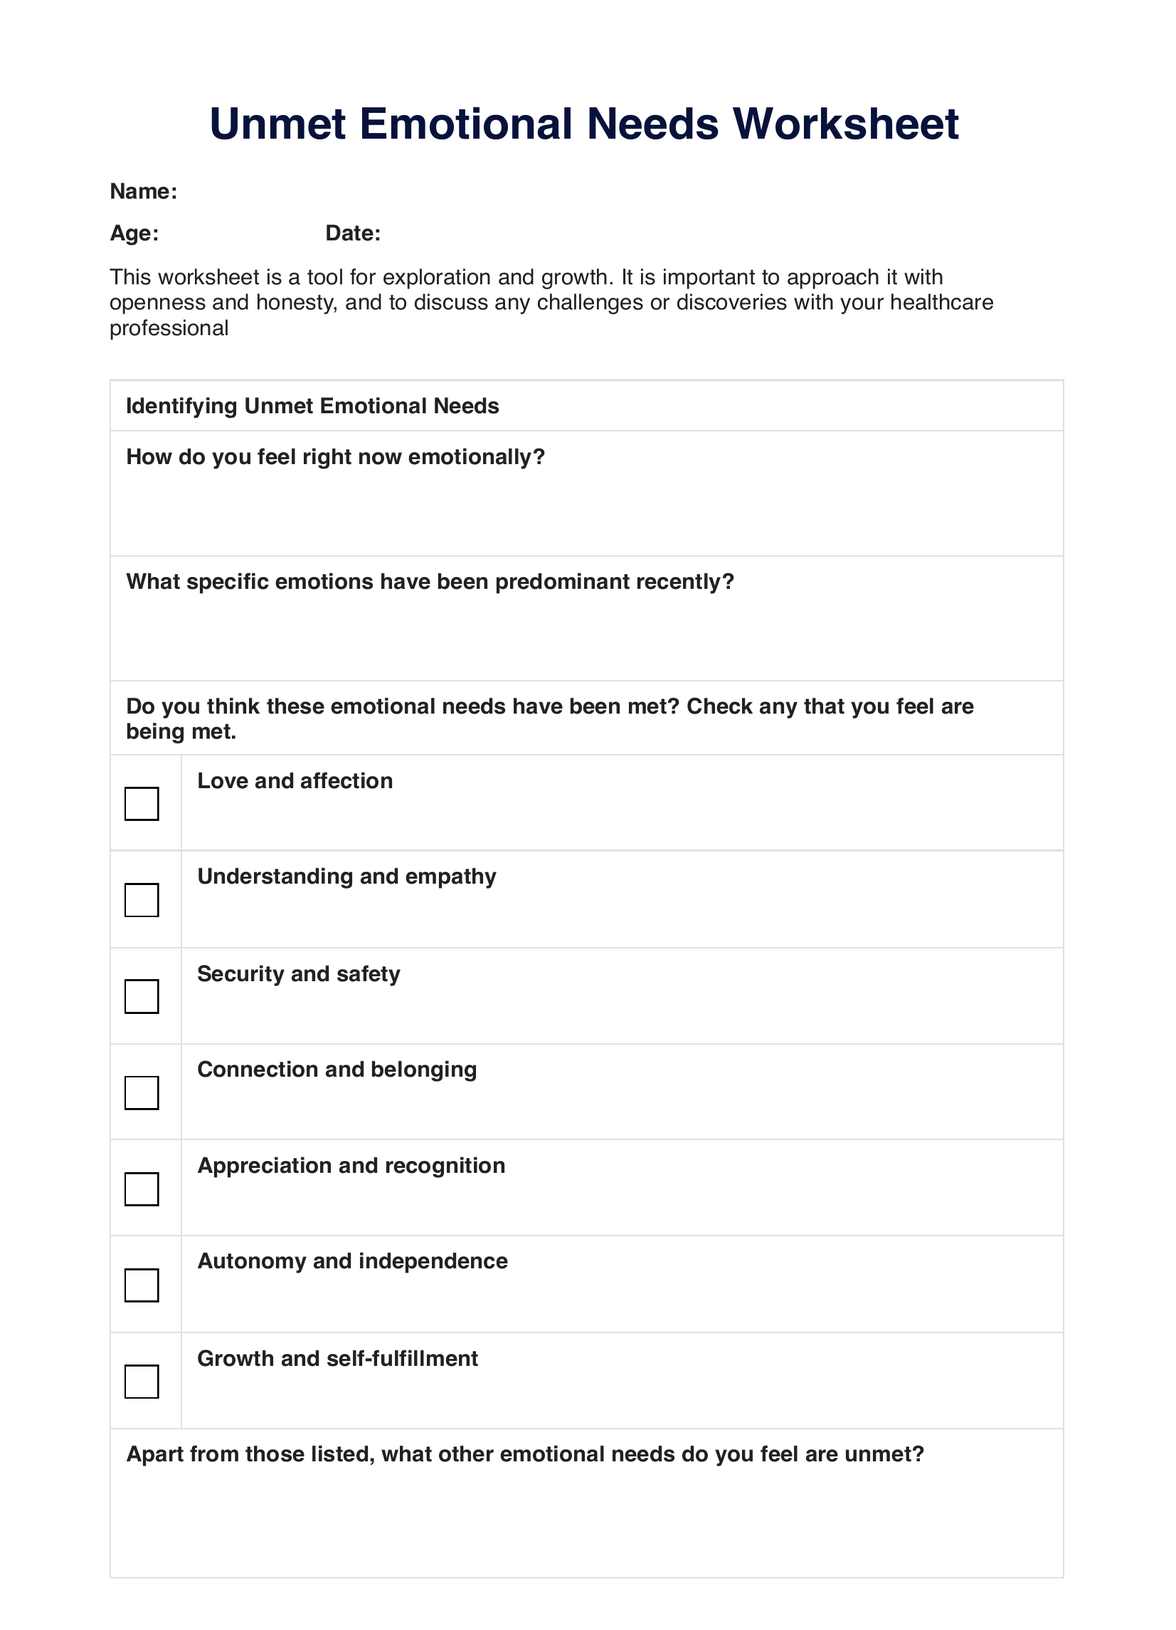 Unmet Emotional Needs Worksheet PDF Example